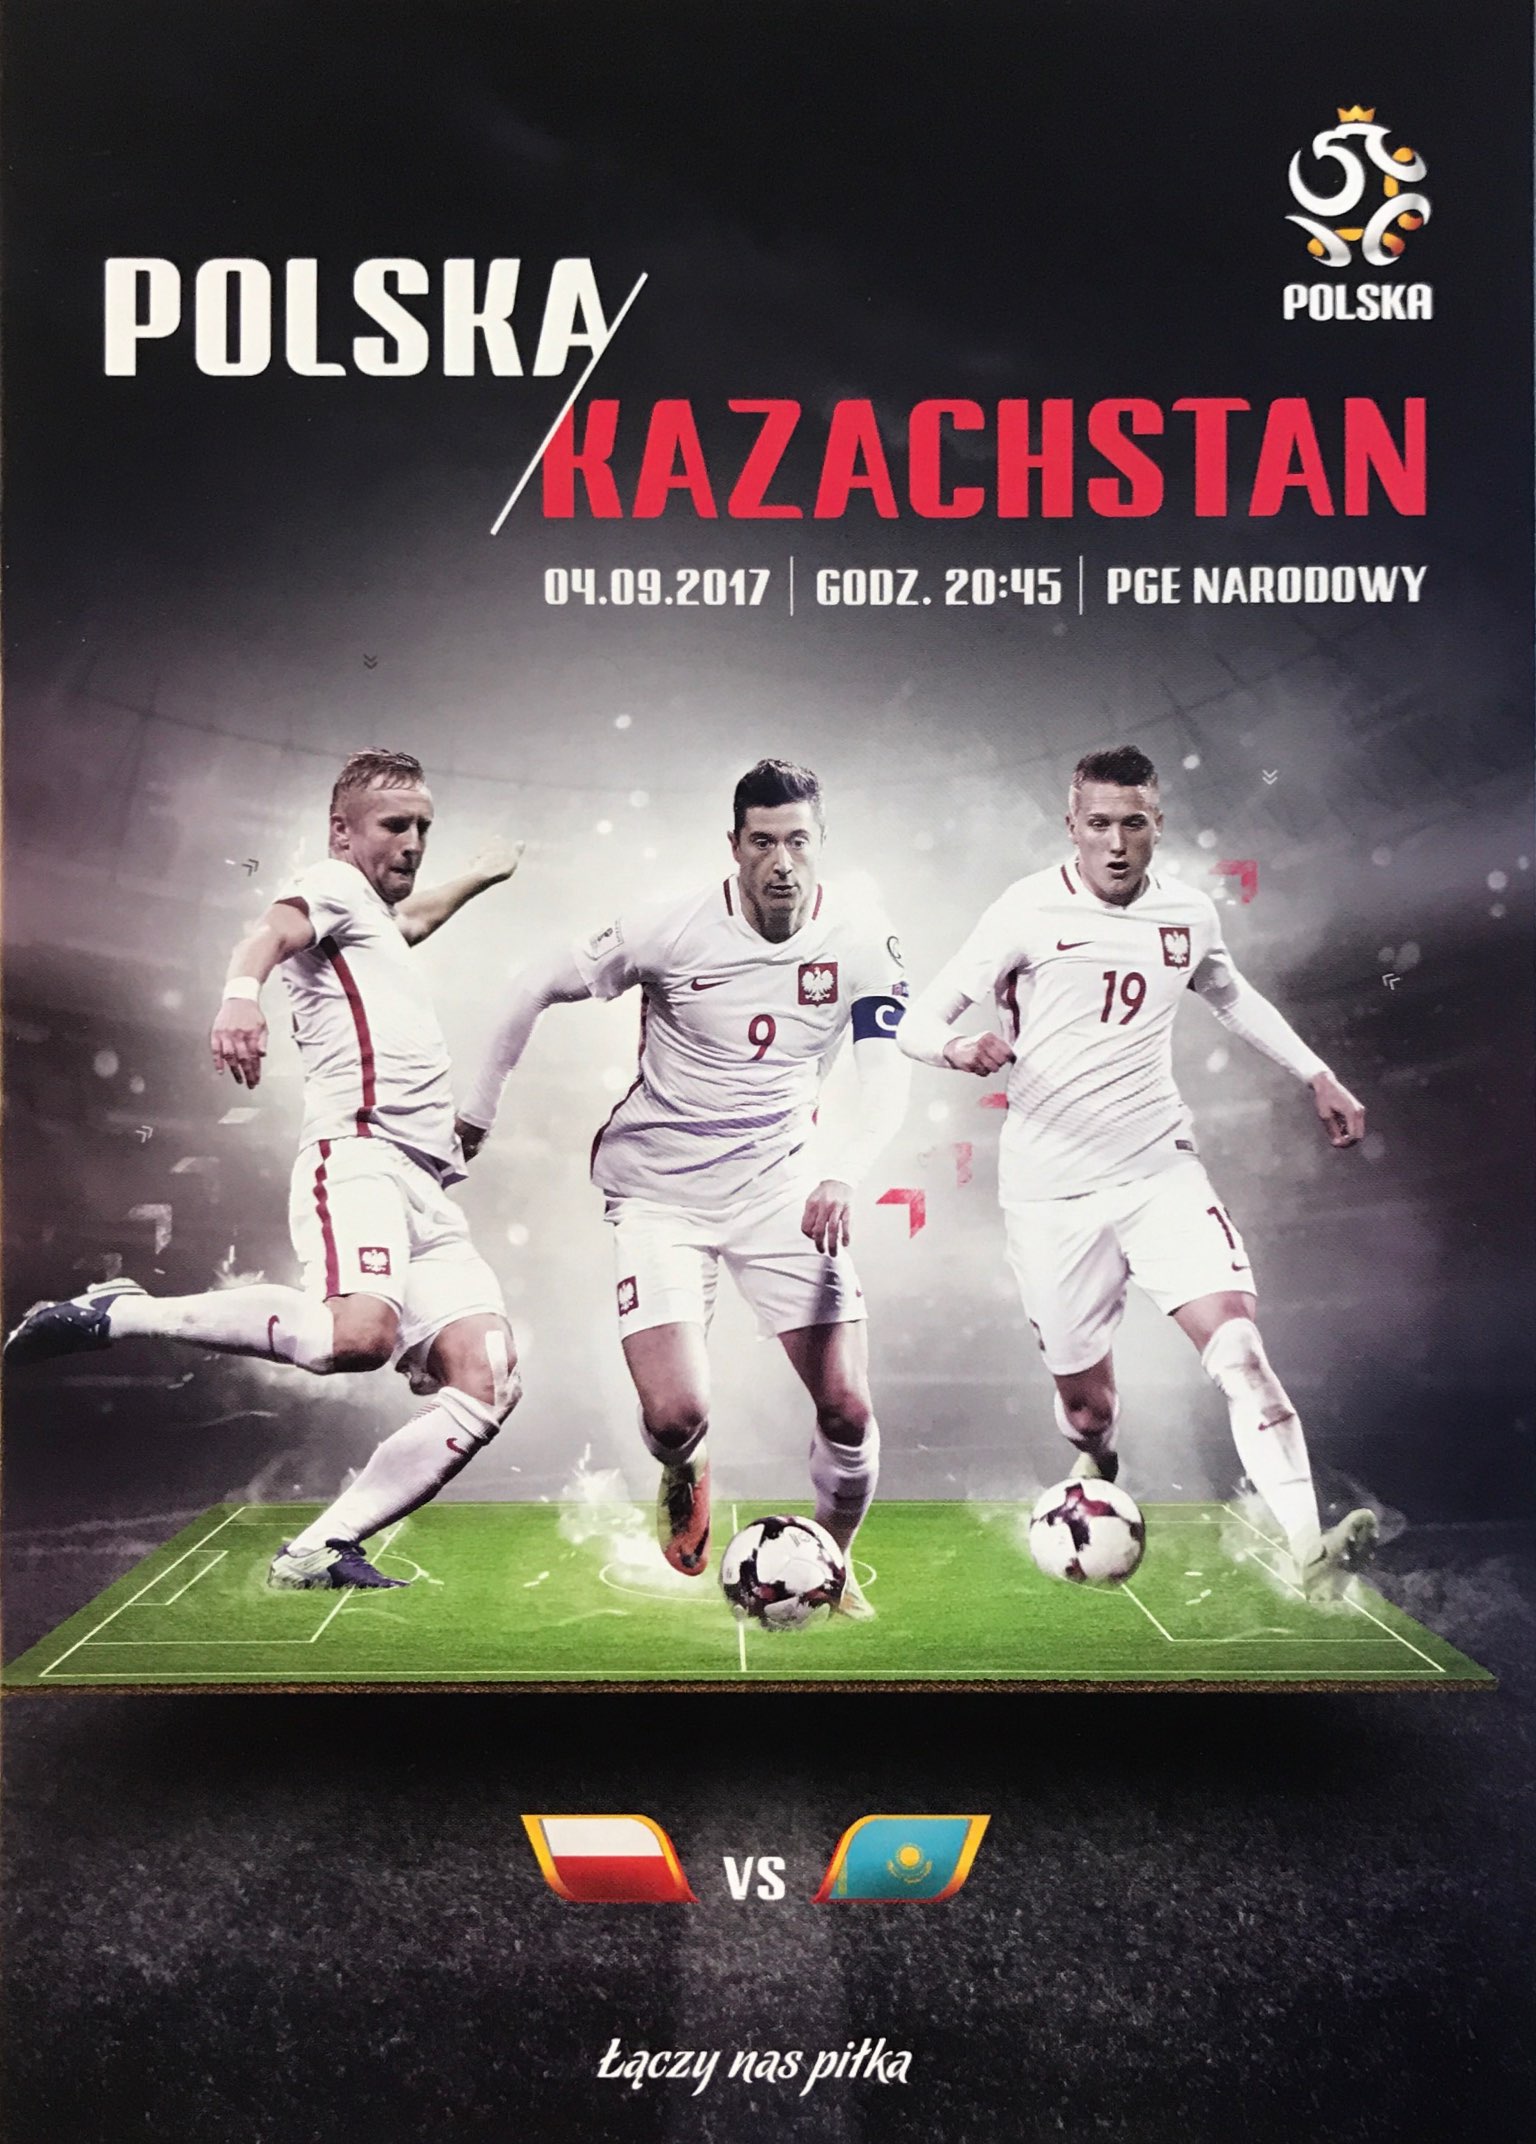 Program meczowy Polska - Kazachstan 3:0 (04.09.2017).